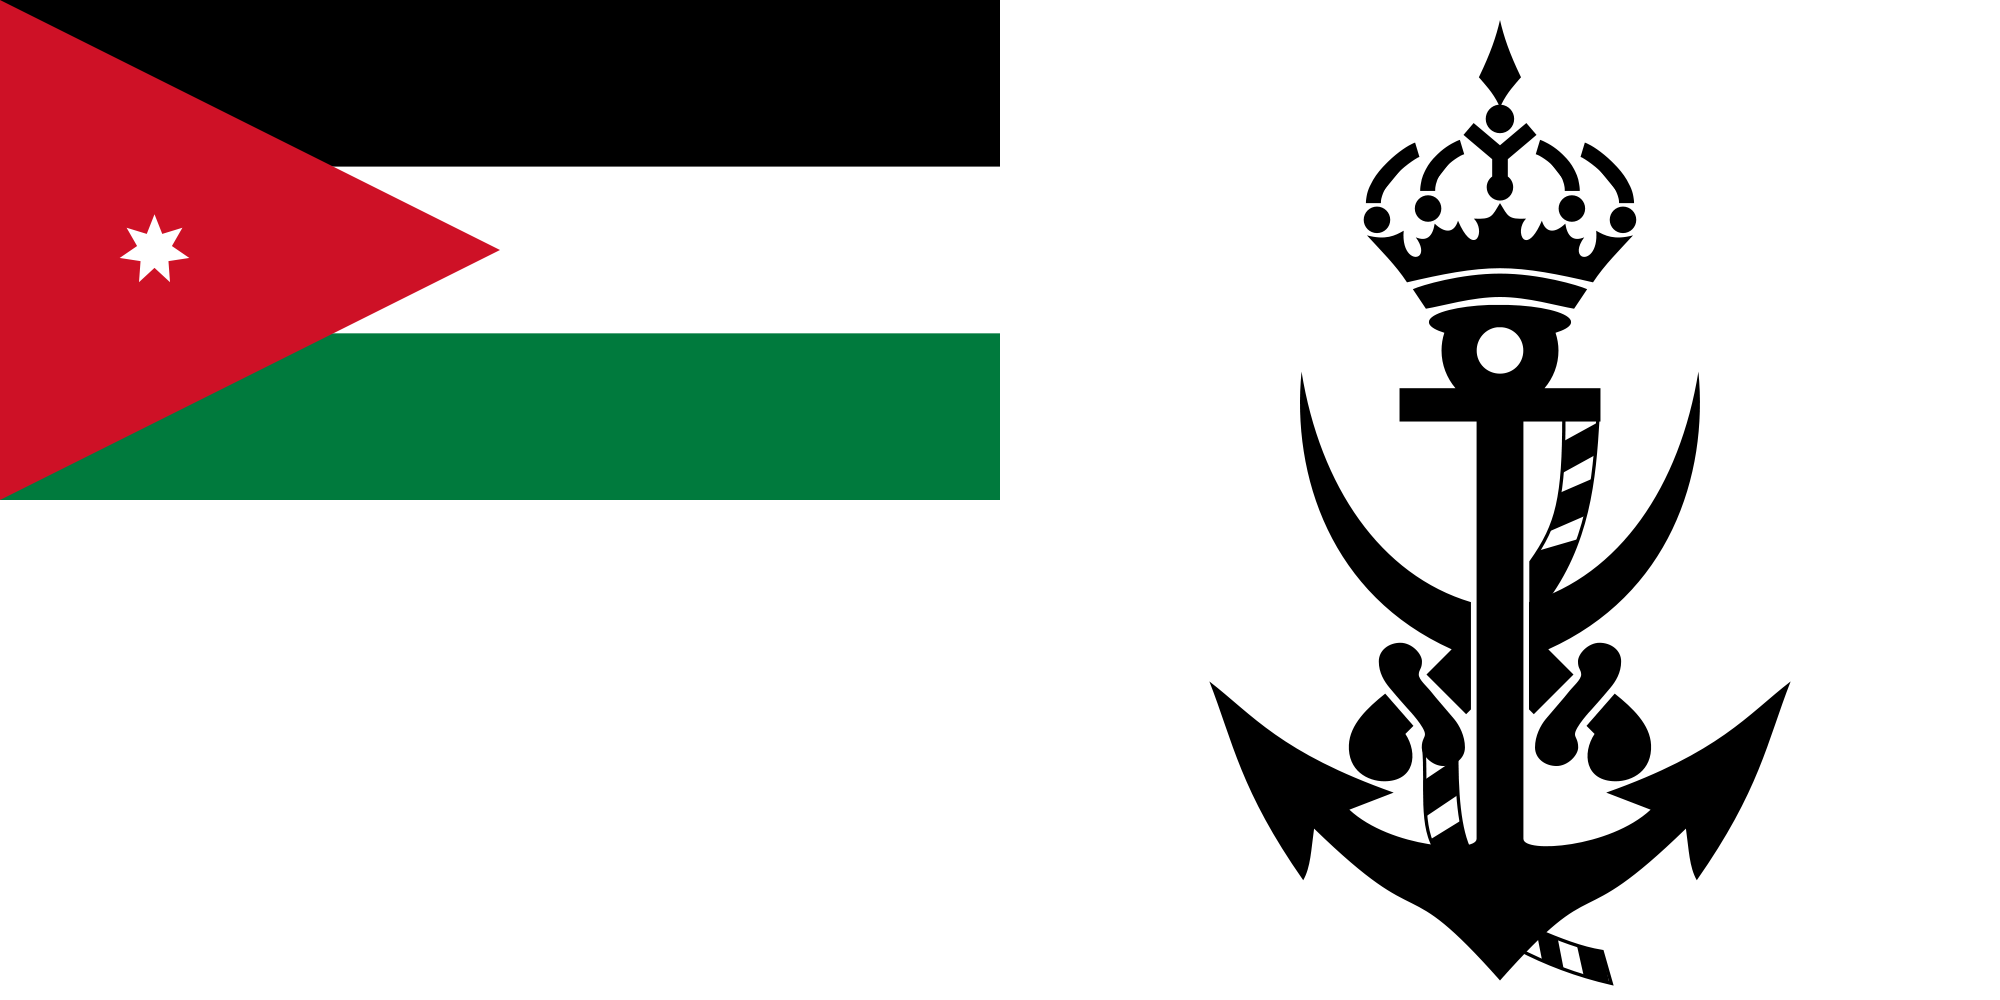 Jordan (Naval ensign)